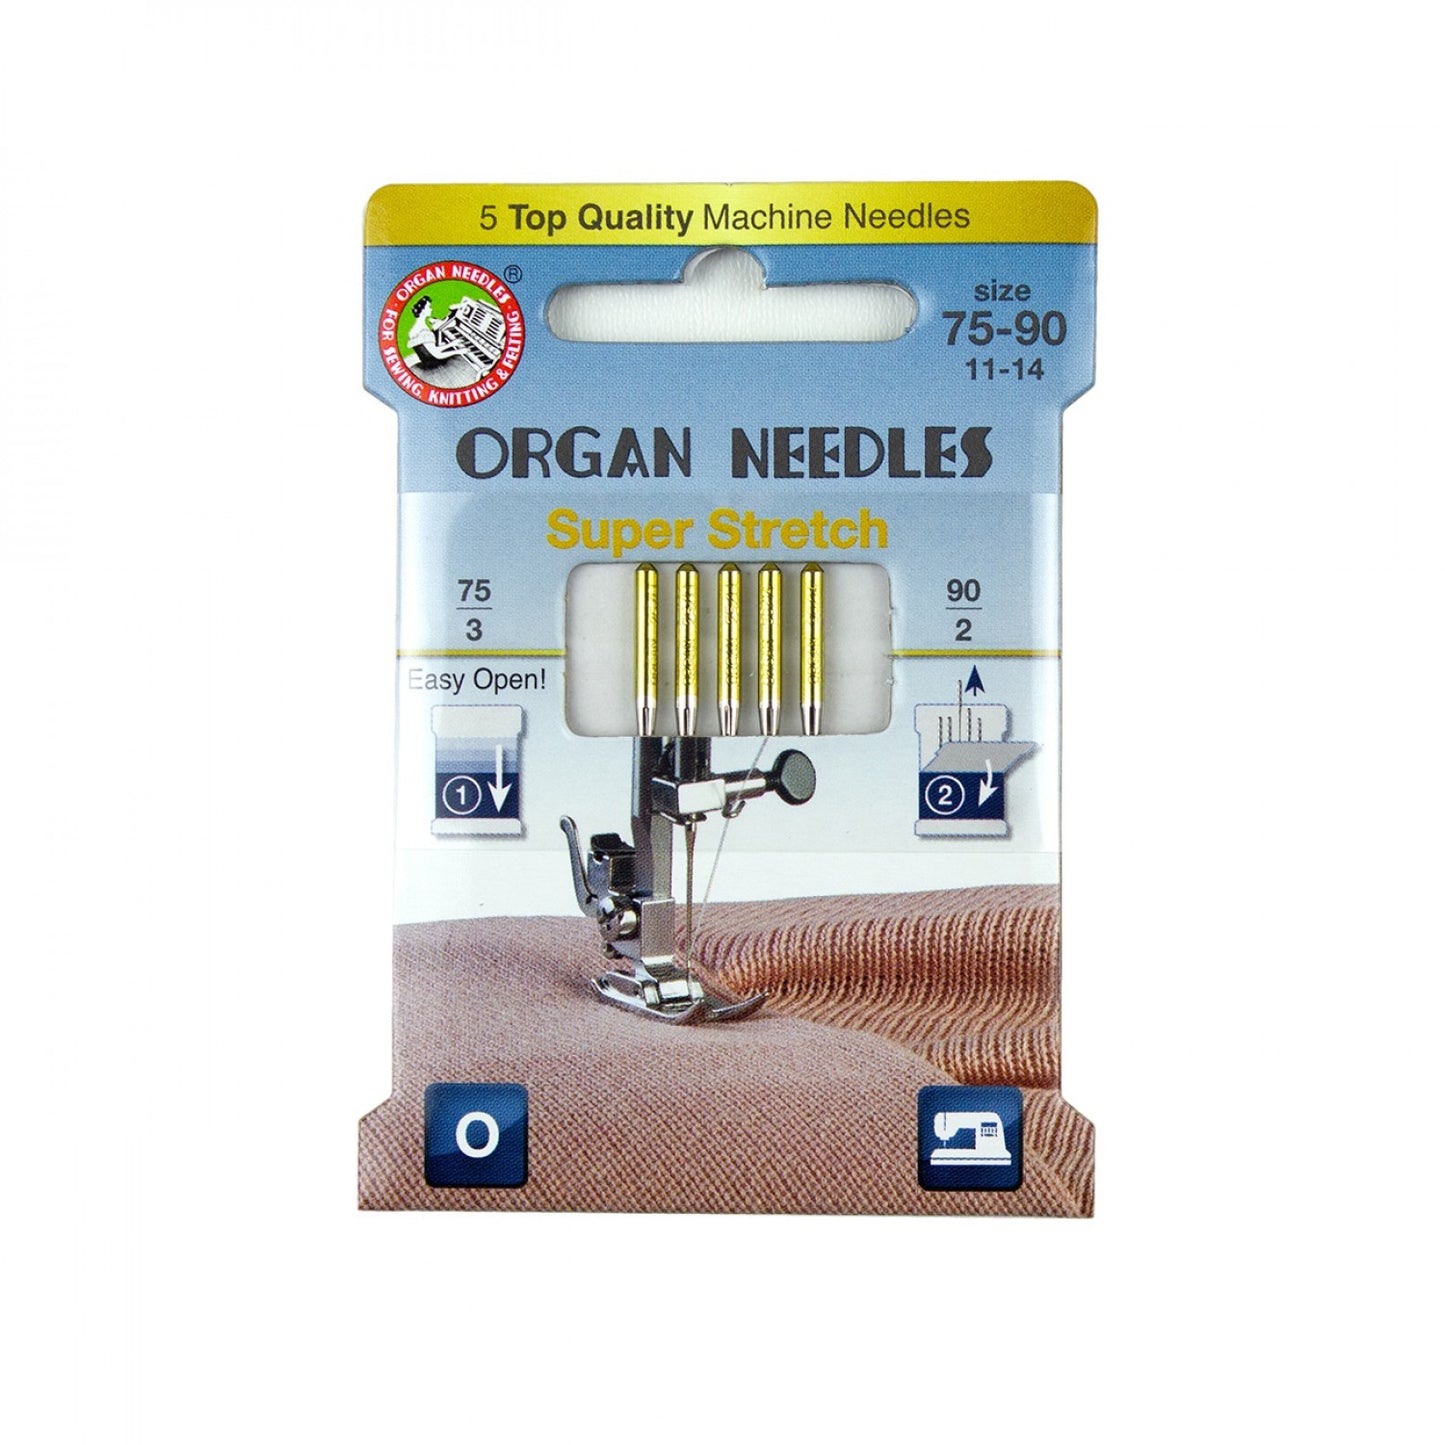 ORGAN Brand Super Stretch Needles. - Assorted Sizes Assortment (3ea 75, 2ea 90)  - 5 Count